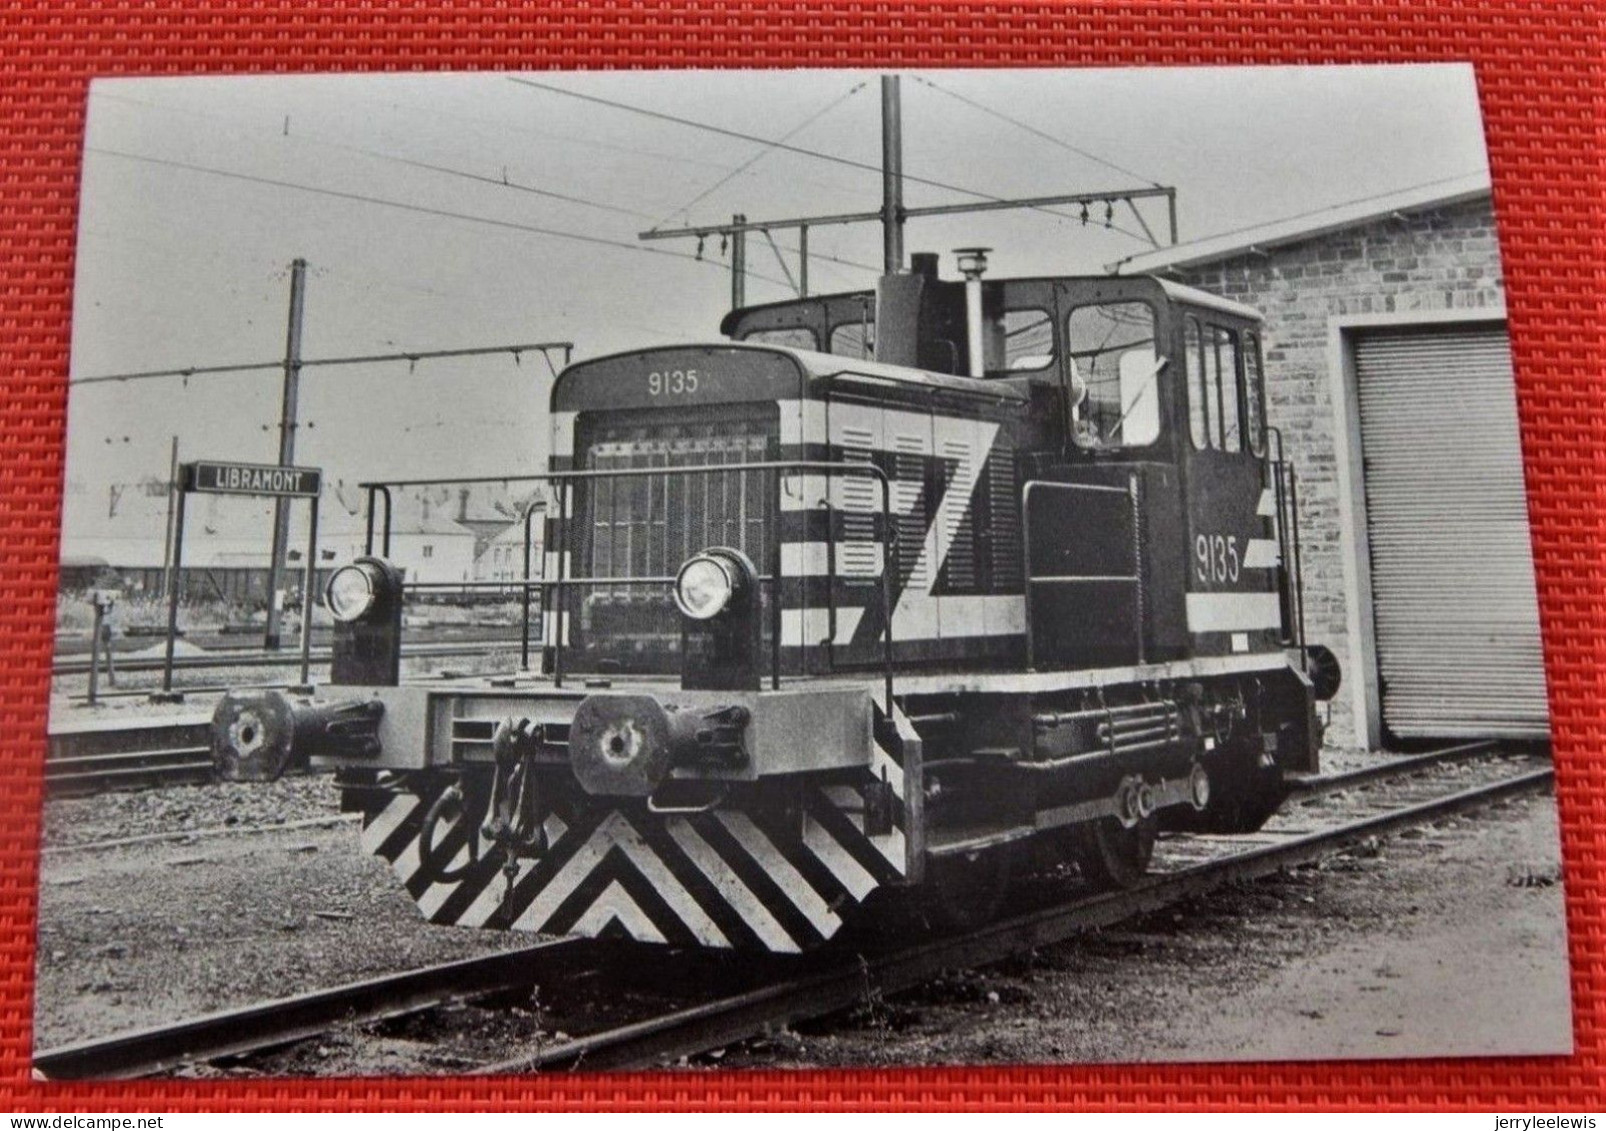 TRAINS  -  SNCB - LIBRAMONT En 1976 - Locomotive De Manoeuvre Série 91  (Photo J-C Michel) - Bahnhöfe Mit Zügen